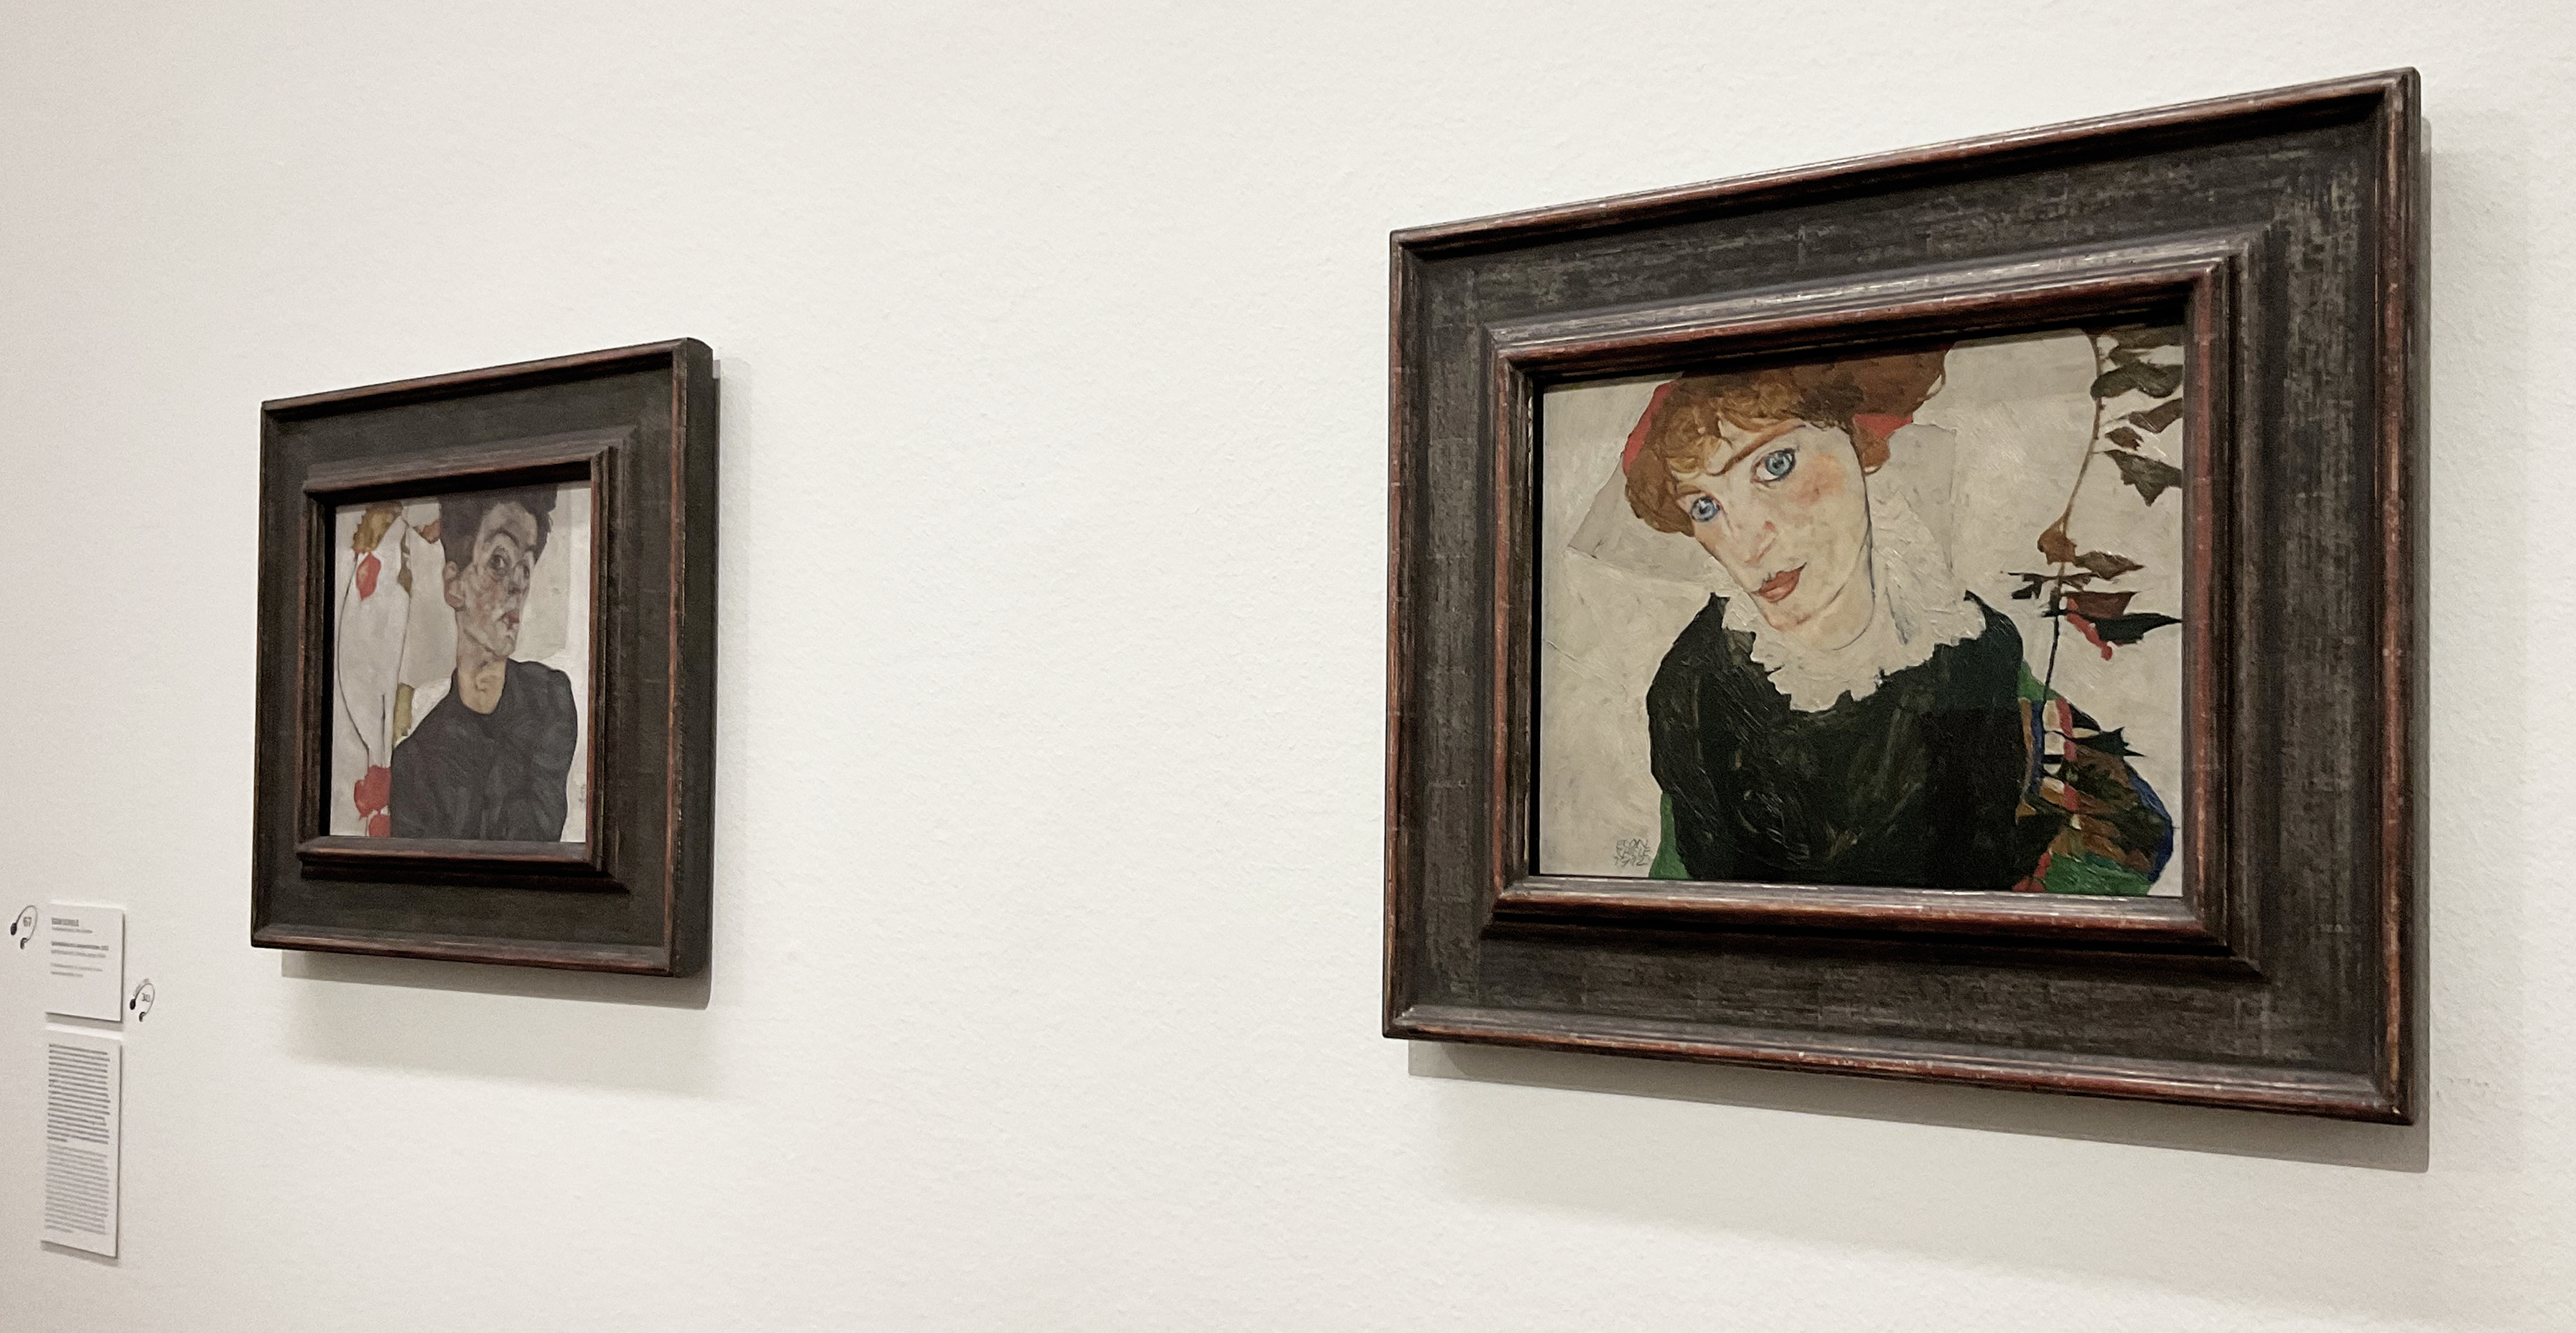 La più grande collezione d’arte di Egon Schiele esistente al mondo nell' affascinante collezione Wien 1900 presso il Leopold Museum di Vienna su L'ArteCheMiPiace a cura di Giuseppina Irene Groccia